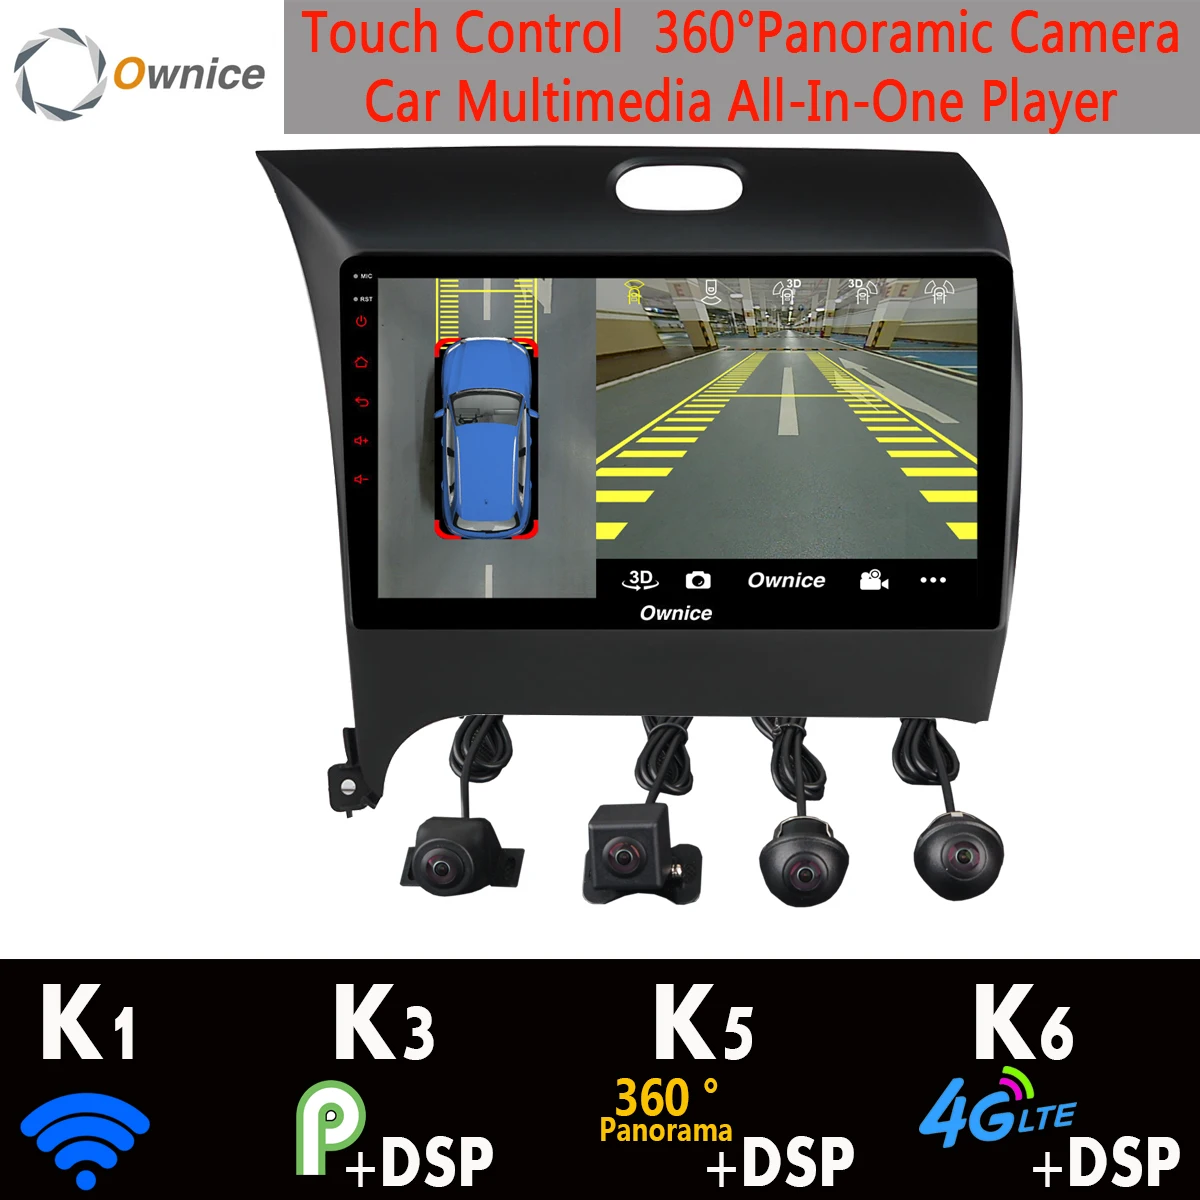 360 ° камера 4G Android 9,0 4+ 64G gps радио CarPlay DSP автомобильный мультимедийный плеер для Kia K3 Cerato 3 Forte 2013